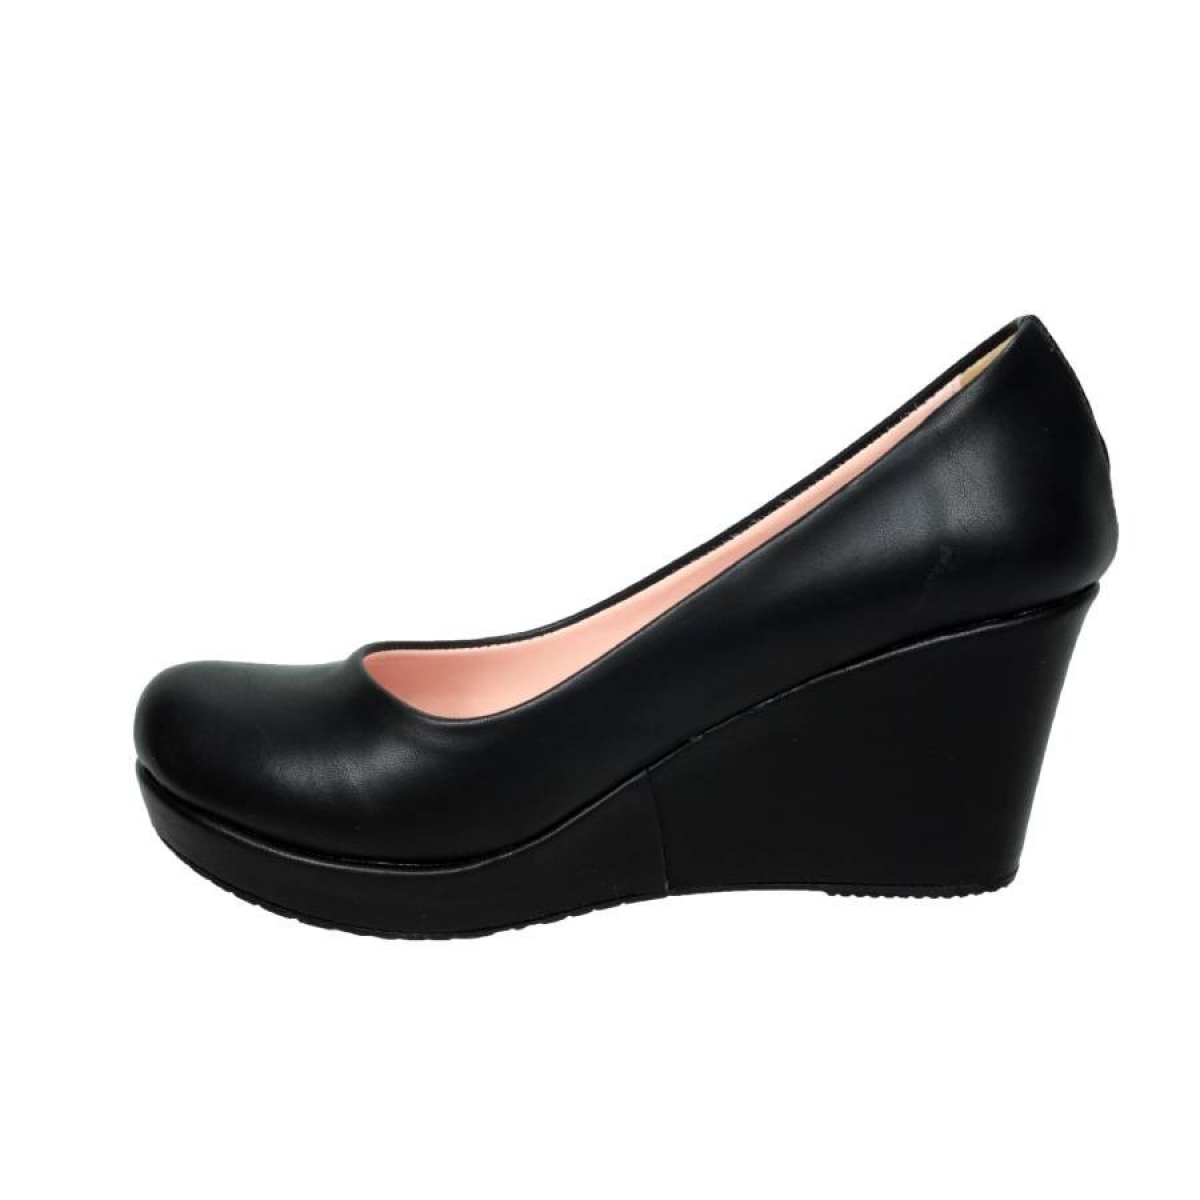 Flo Siyah DolguPlatform Topuk Kadın Ayakkabı Kalıbı Bir Numara Dardır. 3